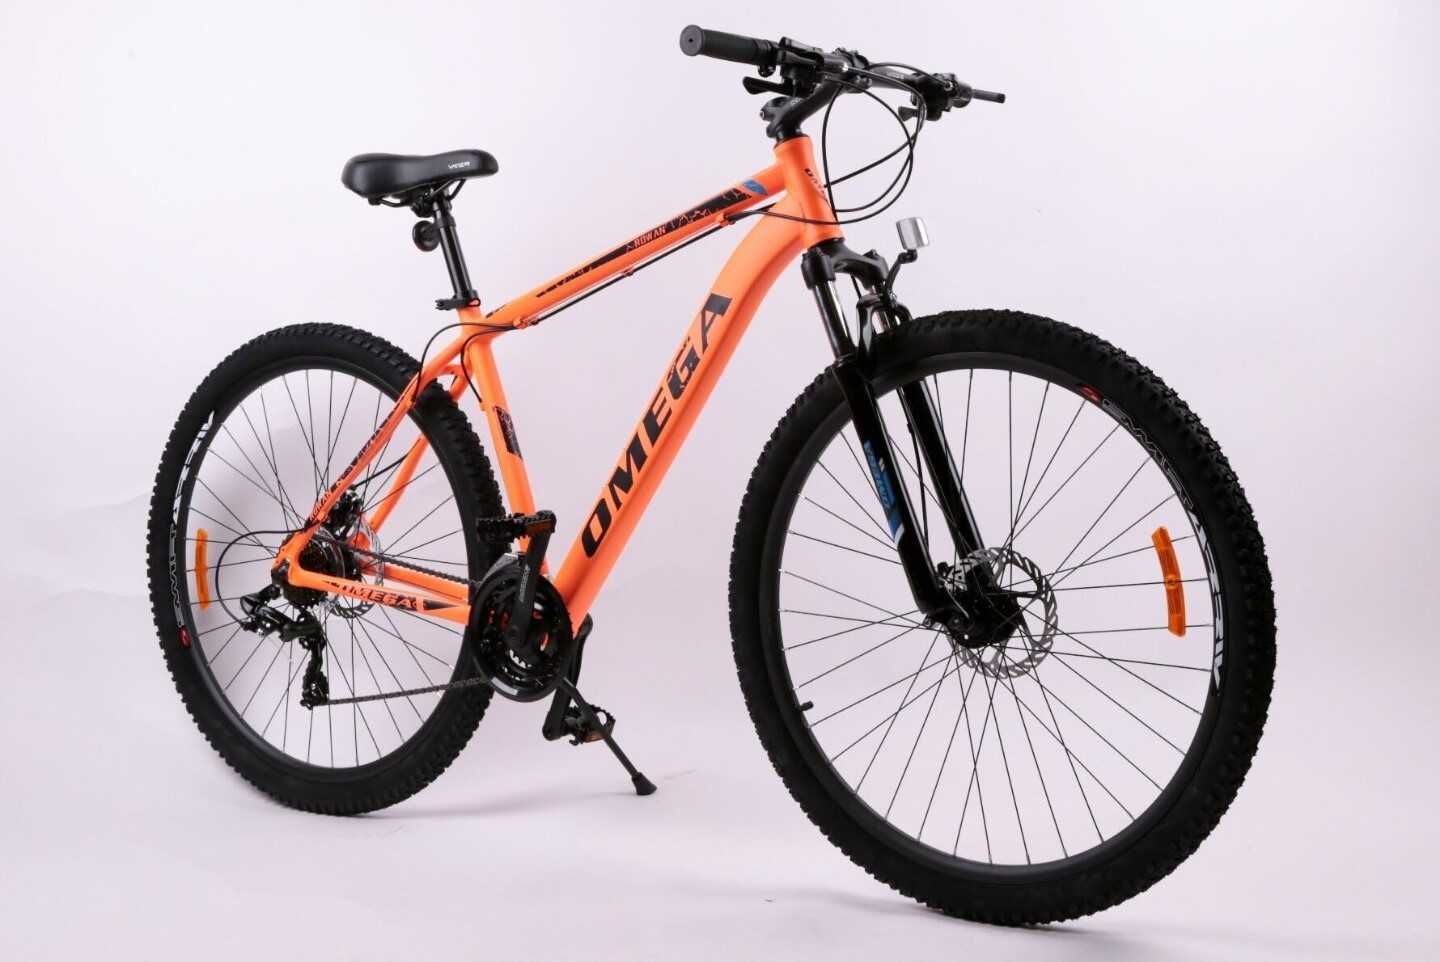 Bicicletă nouă 27.5" Rowan Omega, portocaliu-negru